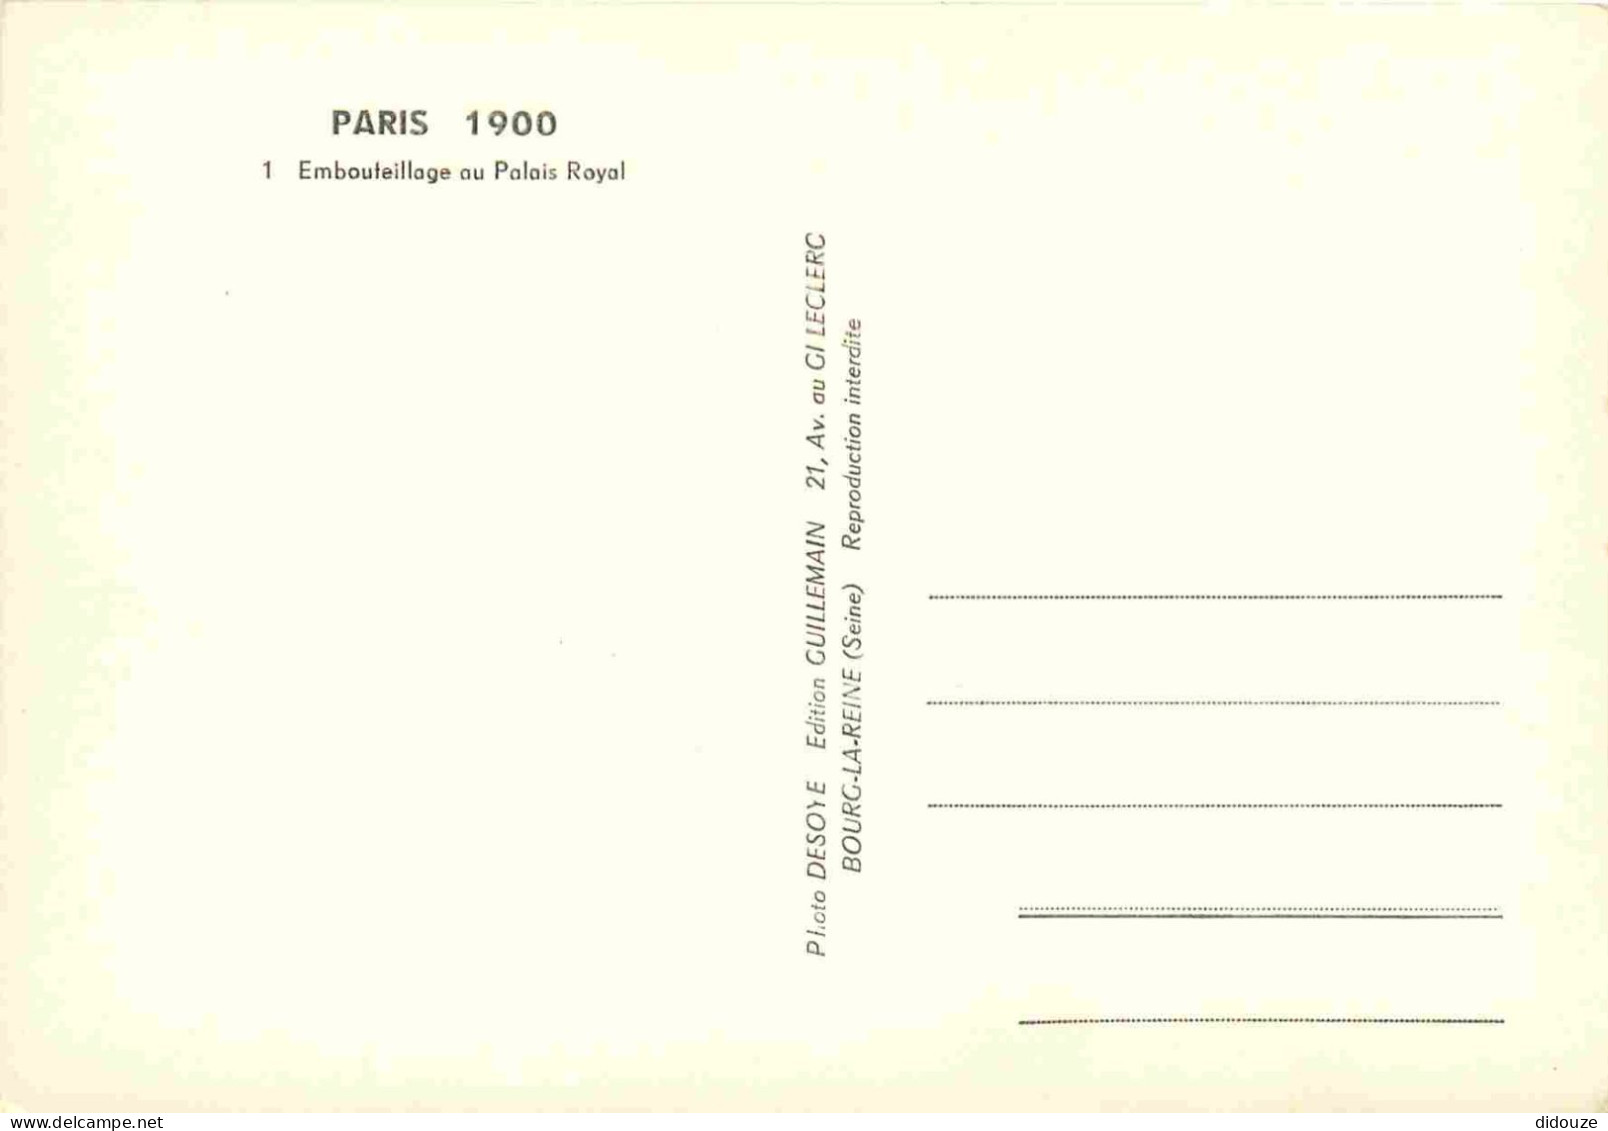 Reproduction CPA - 75 Paris - Embouteillage Au Palais Royal - Automobiles - Omnibus - Paris 1900 - 1 - CPM - Carte Neuve - Non Classés